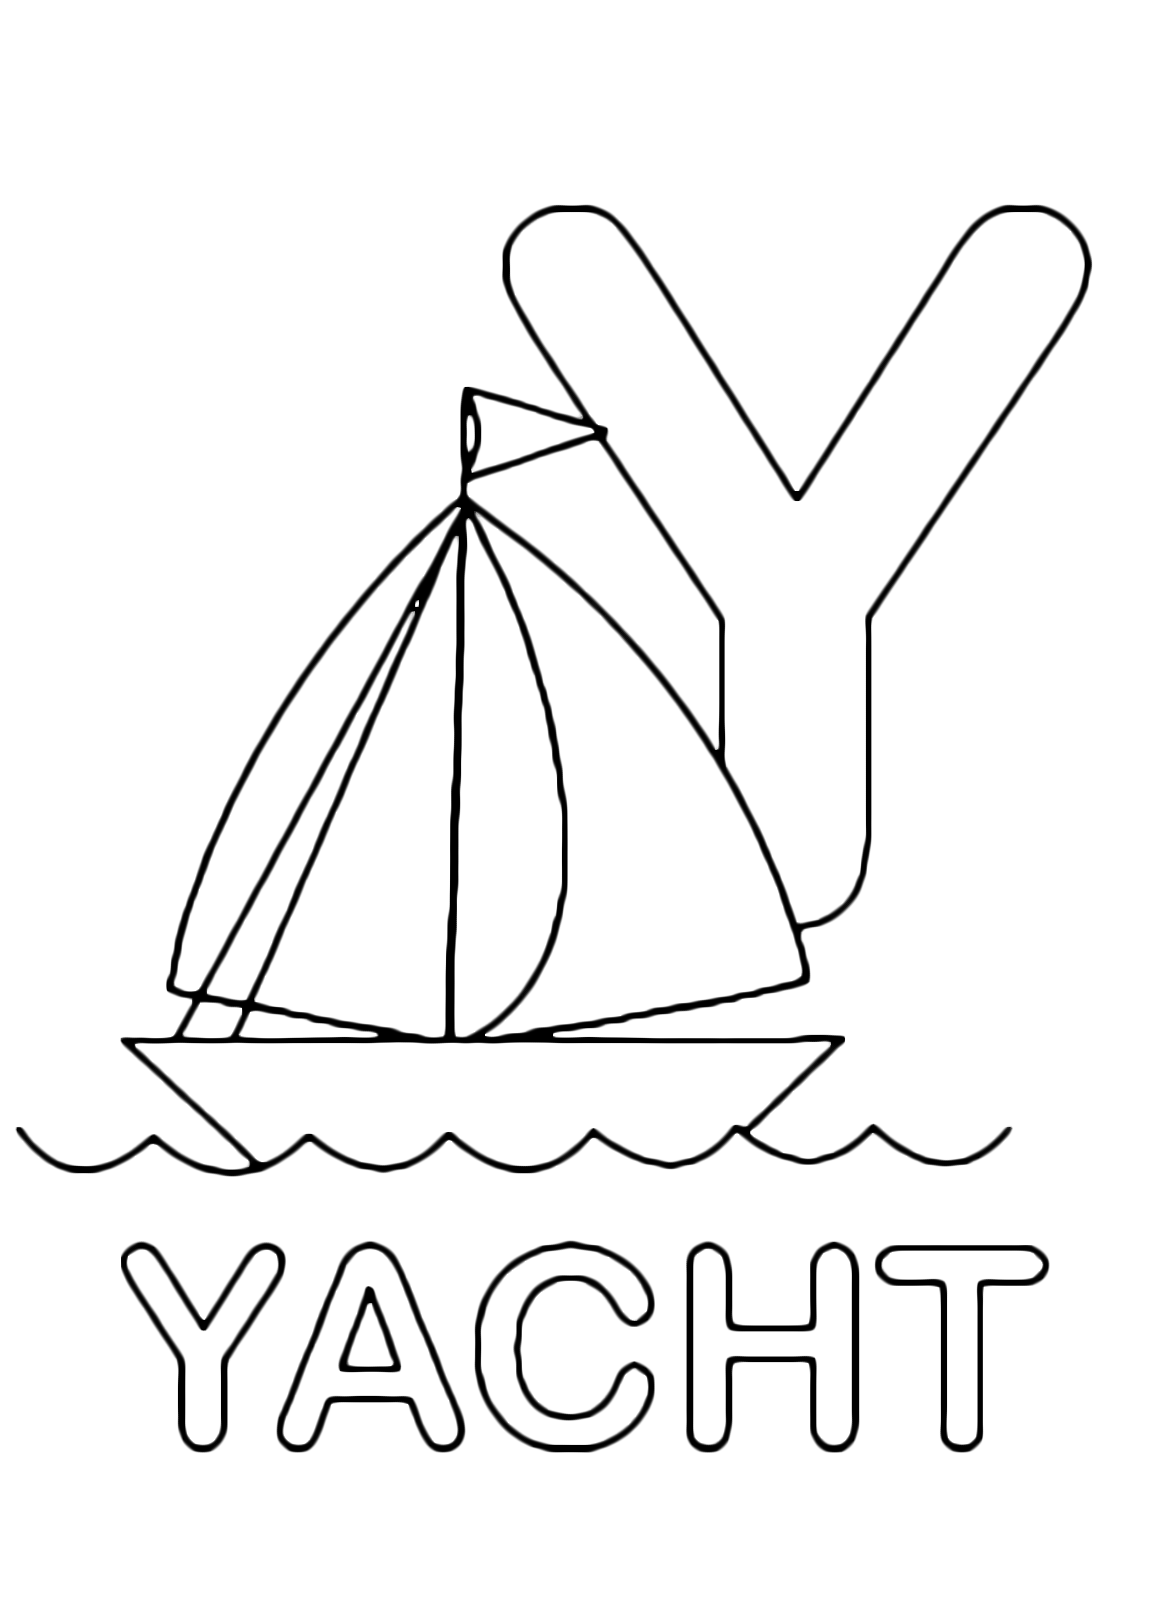 Lettere e numeri - Lettera Y in stampatello di yacht (barca) in Inglese